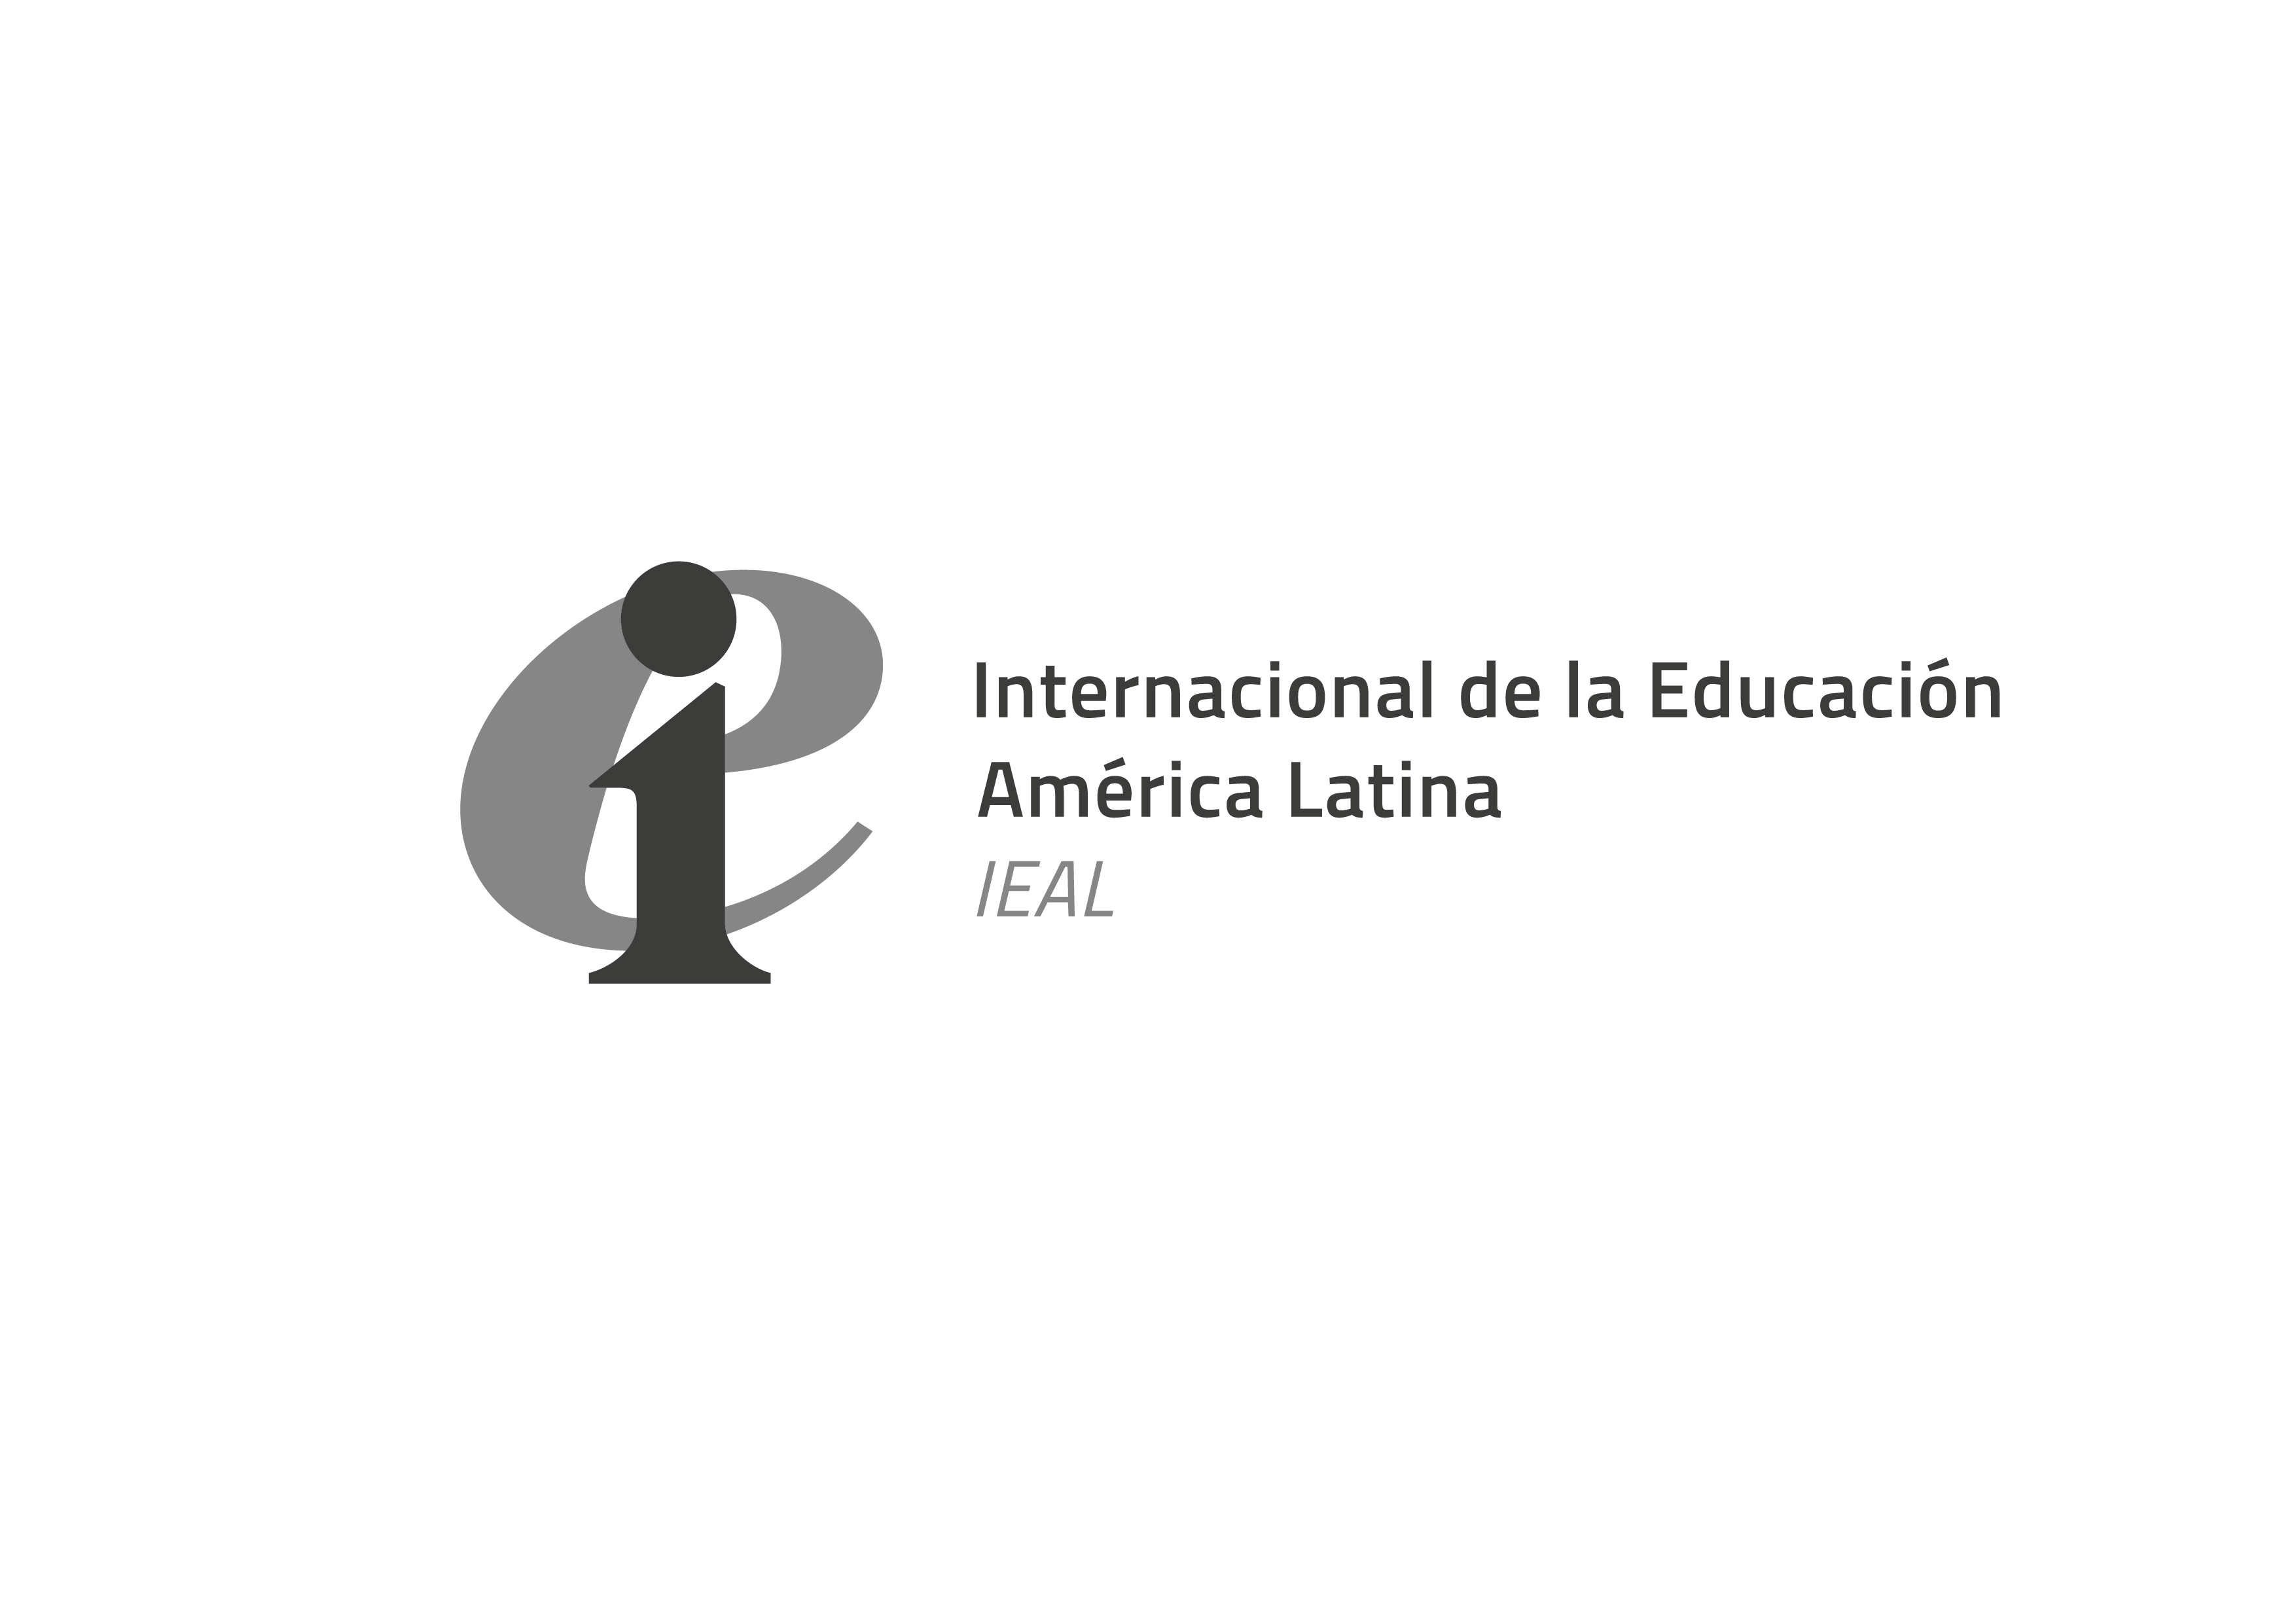 La Internacional de la Educación América Latina expresa sus condolencias por el fallecimiento de João Felício